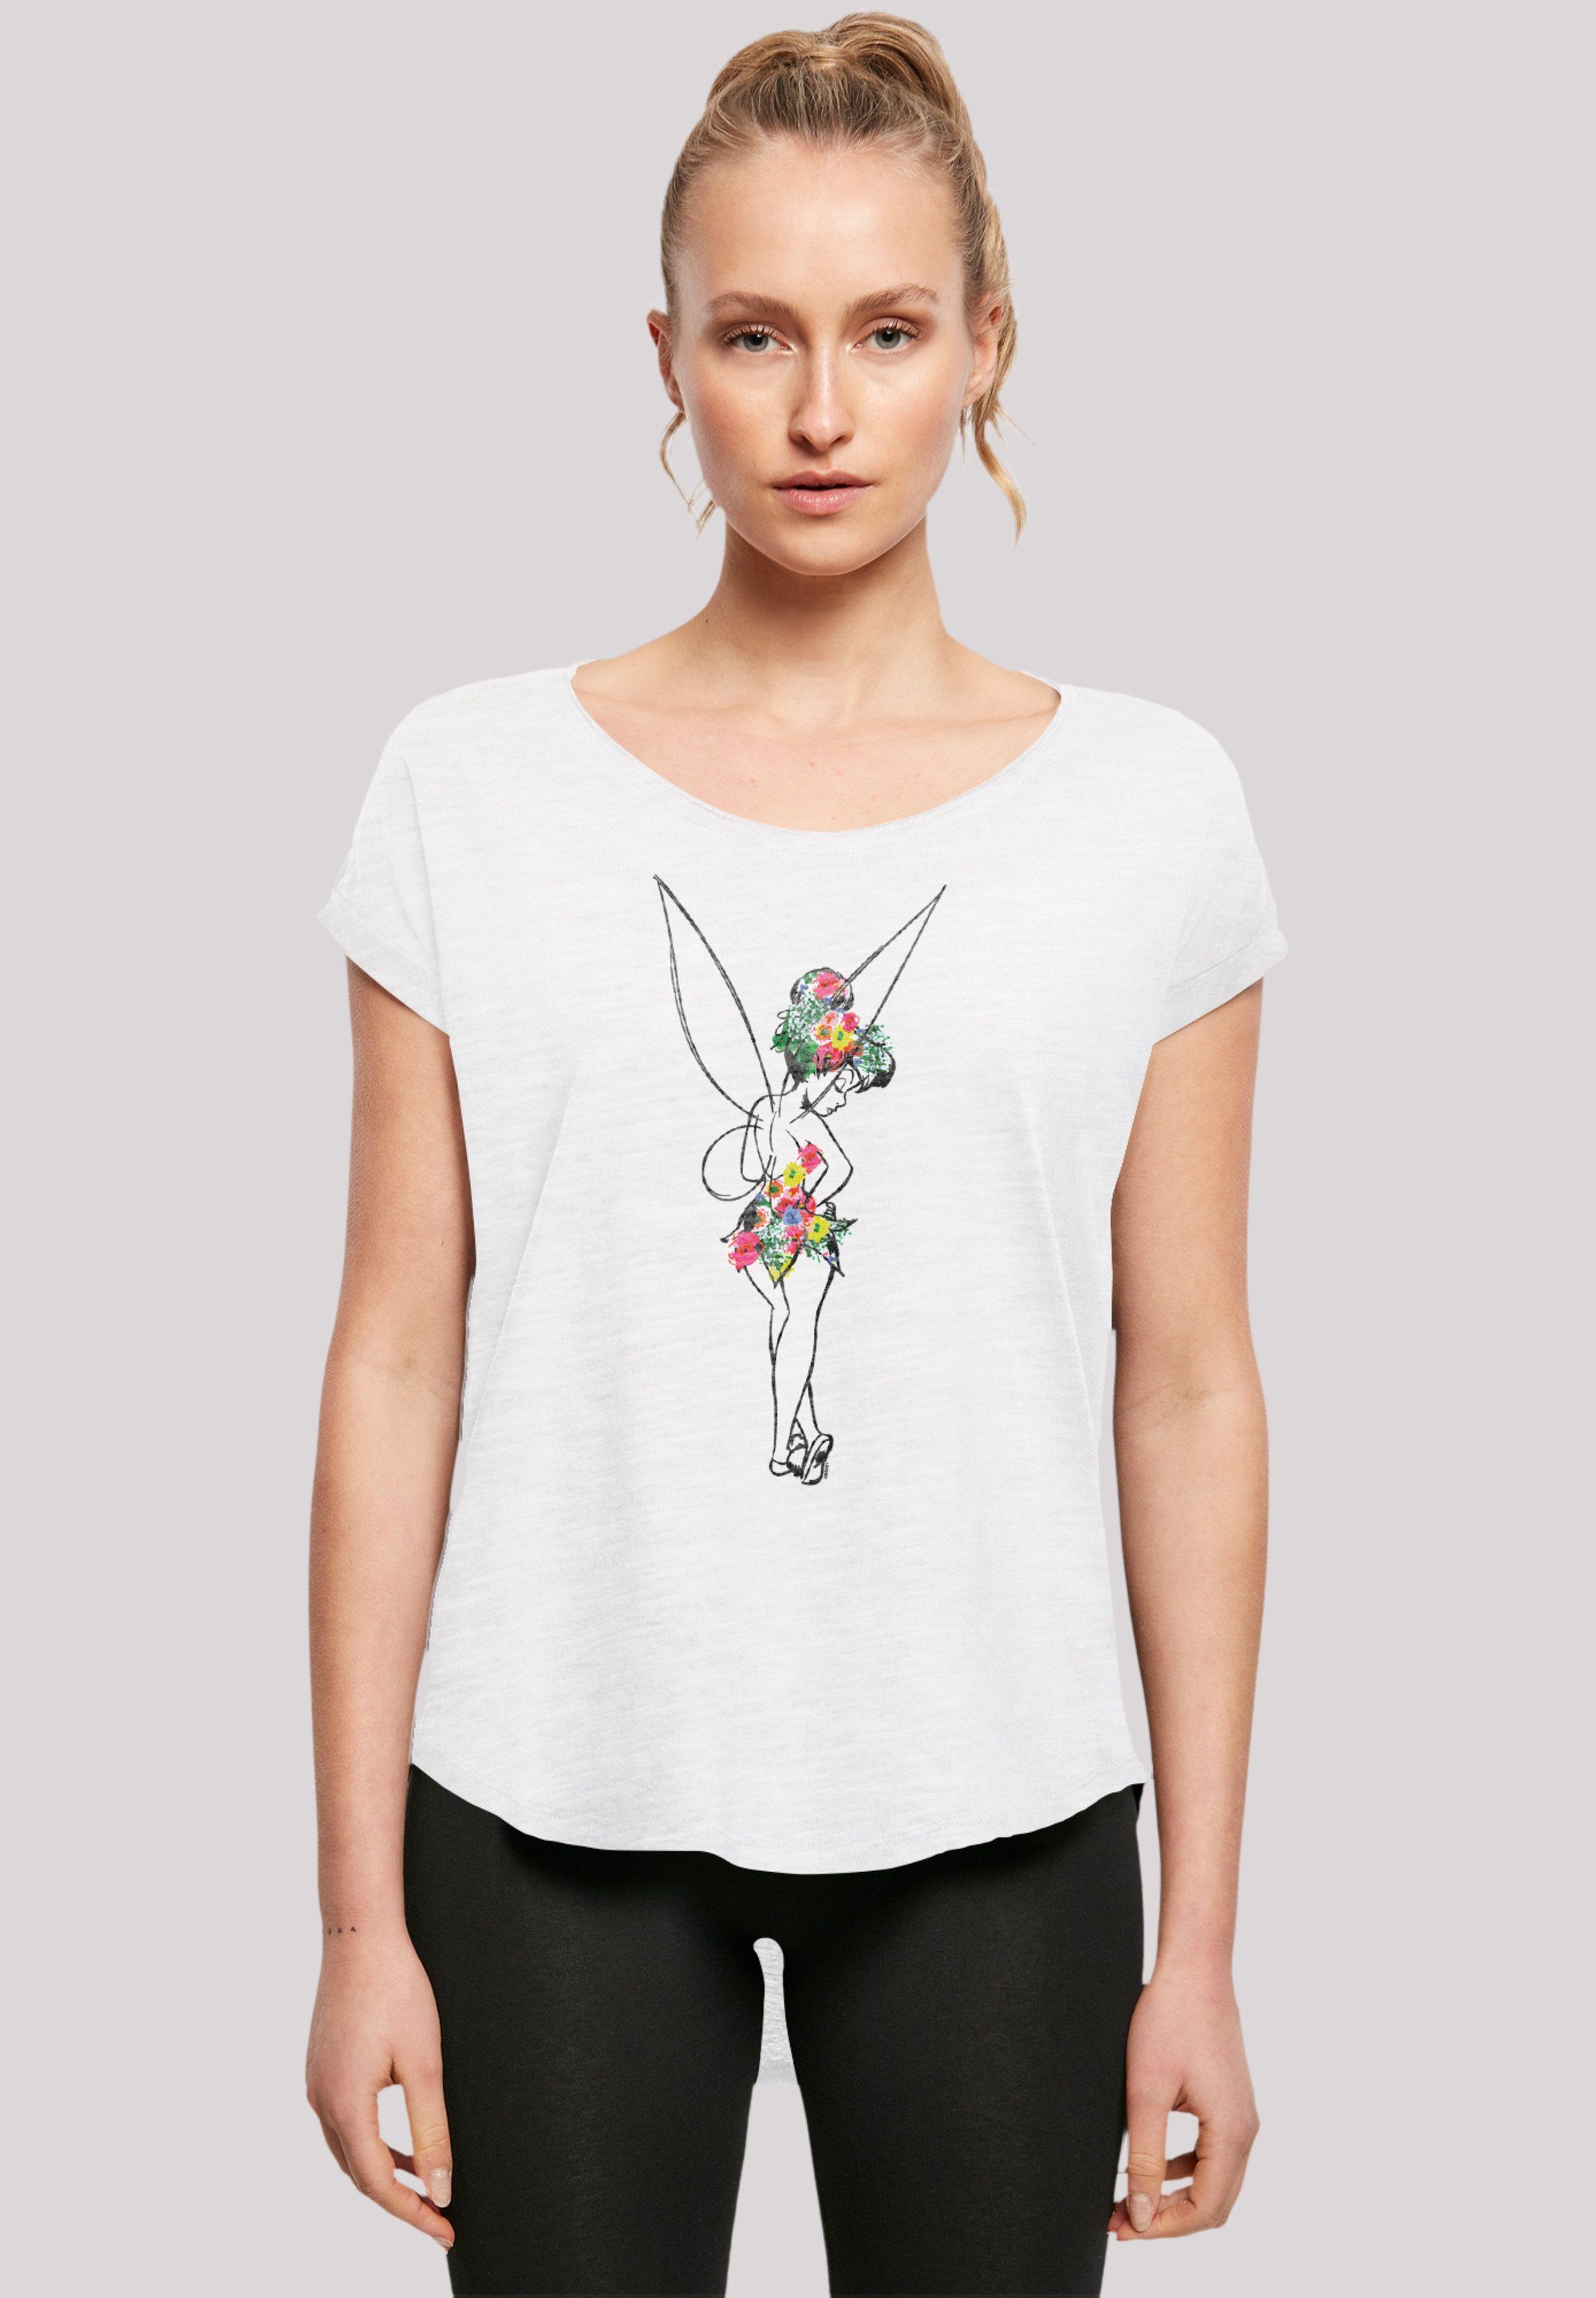 F4NT4STIC T-Shirt Disney Peter extra Qualität, Hinten lang Flower Power geschnittenes T-Shirt Pan Damen Premium